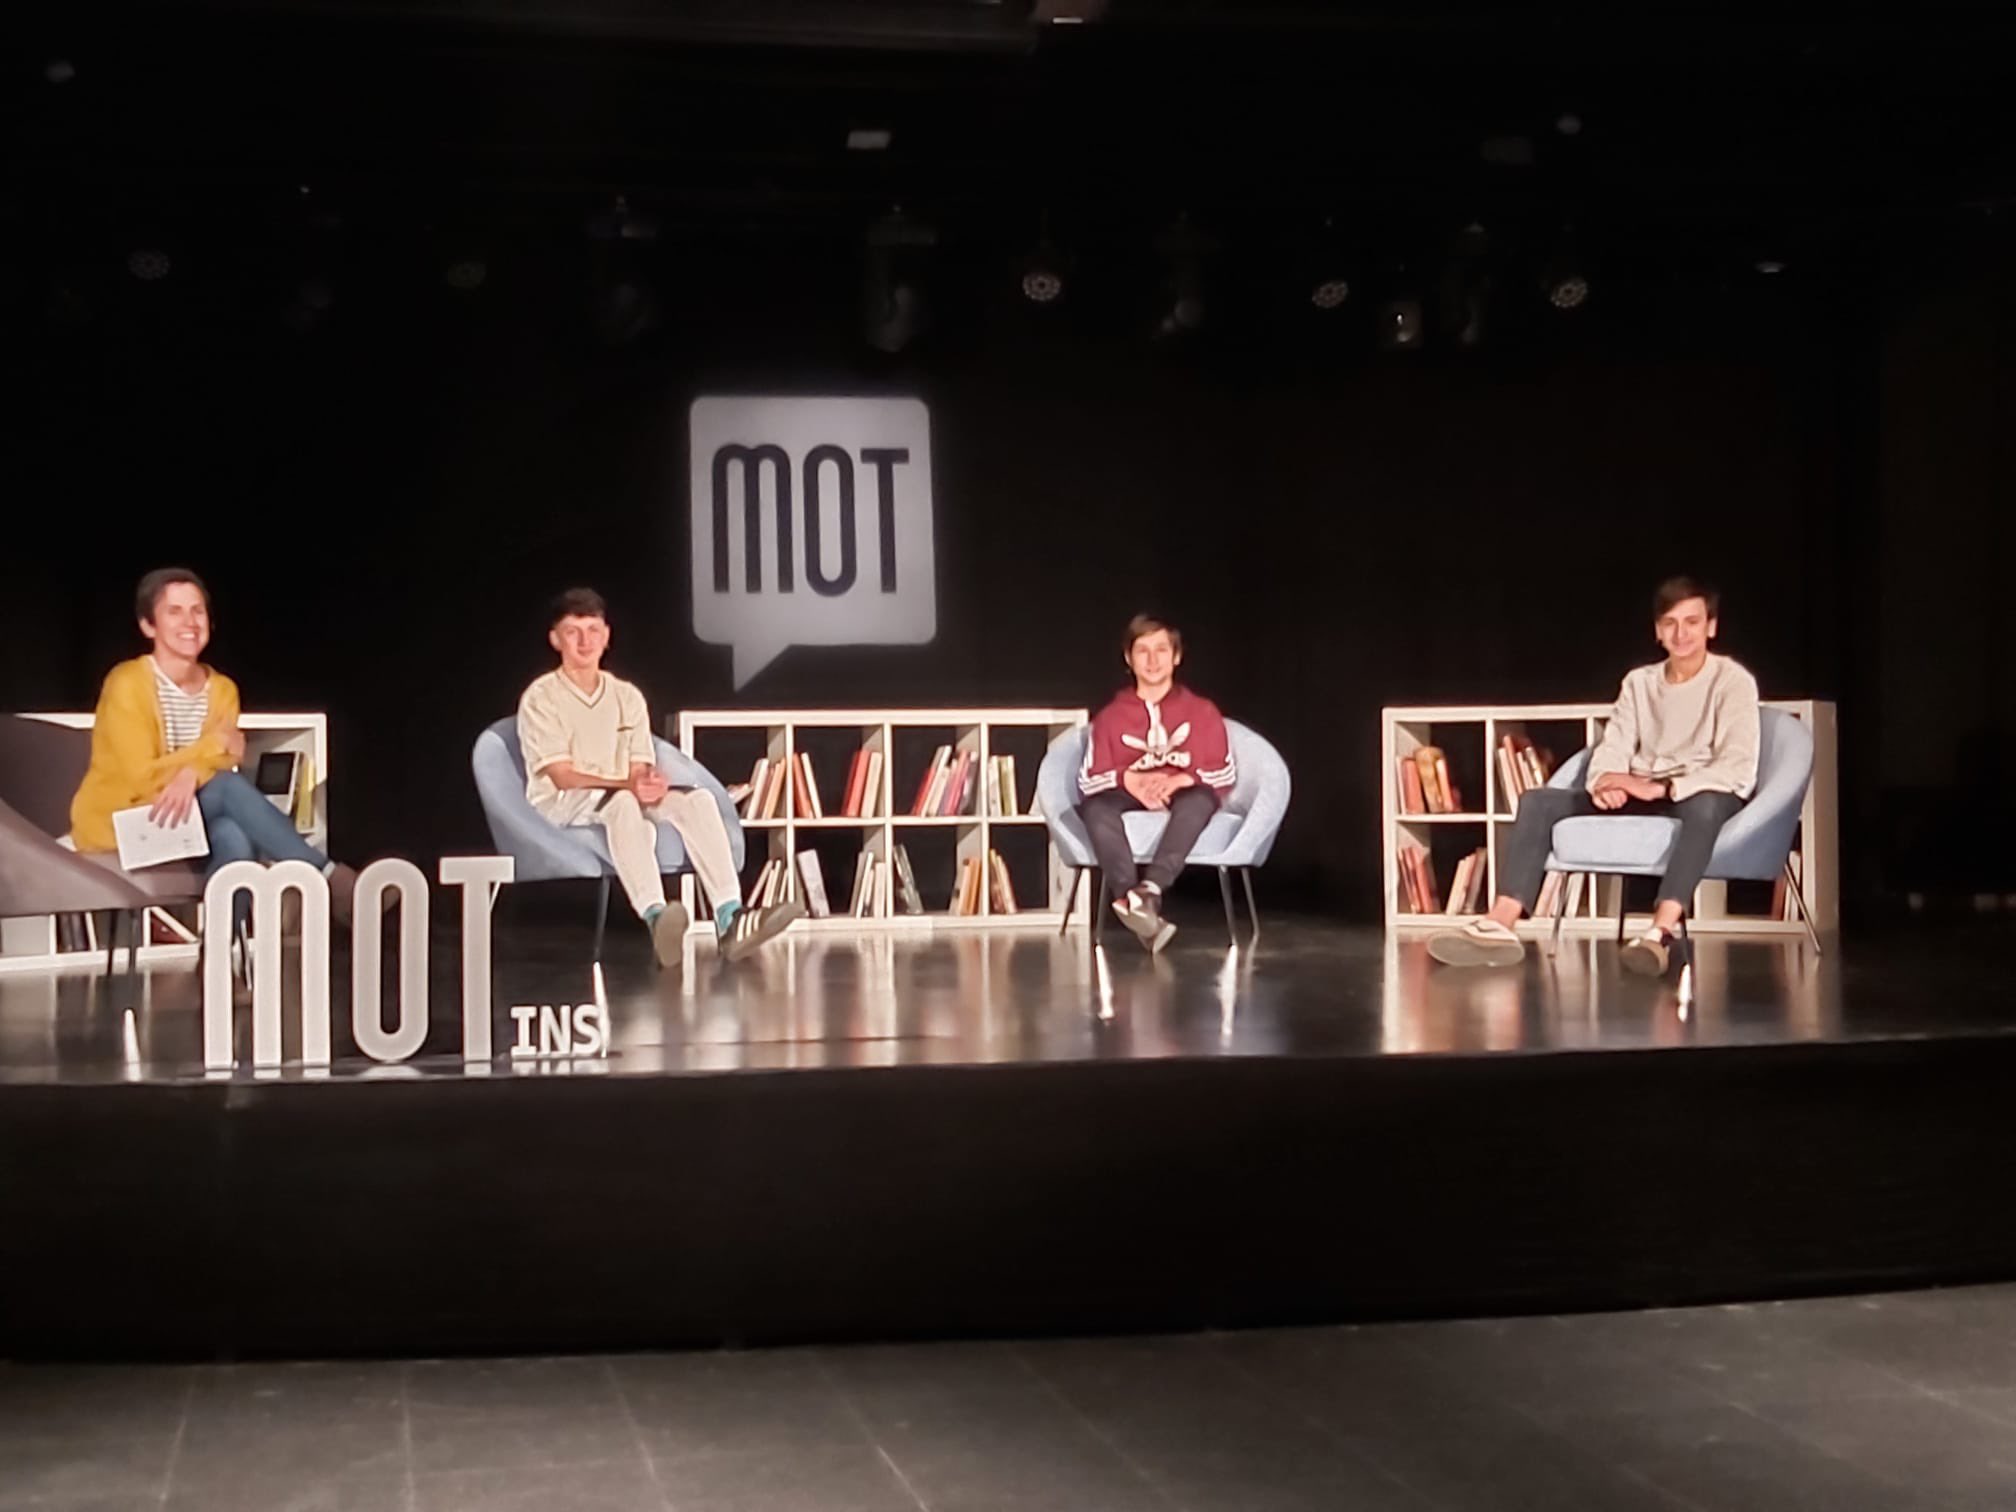 Àgata Losantos (coordinadora del Mot), amb Pol Pintor, Isaac Sarola i Pau Verdaguer, que debateren a distància amb Marta Cava